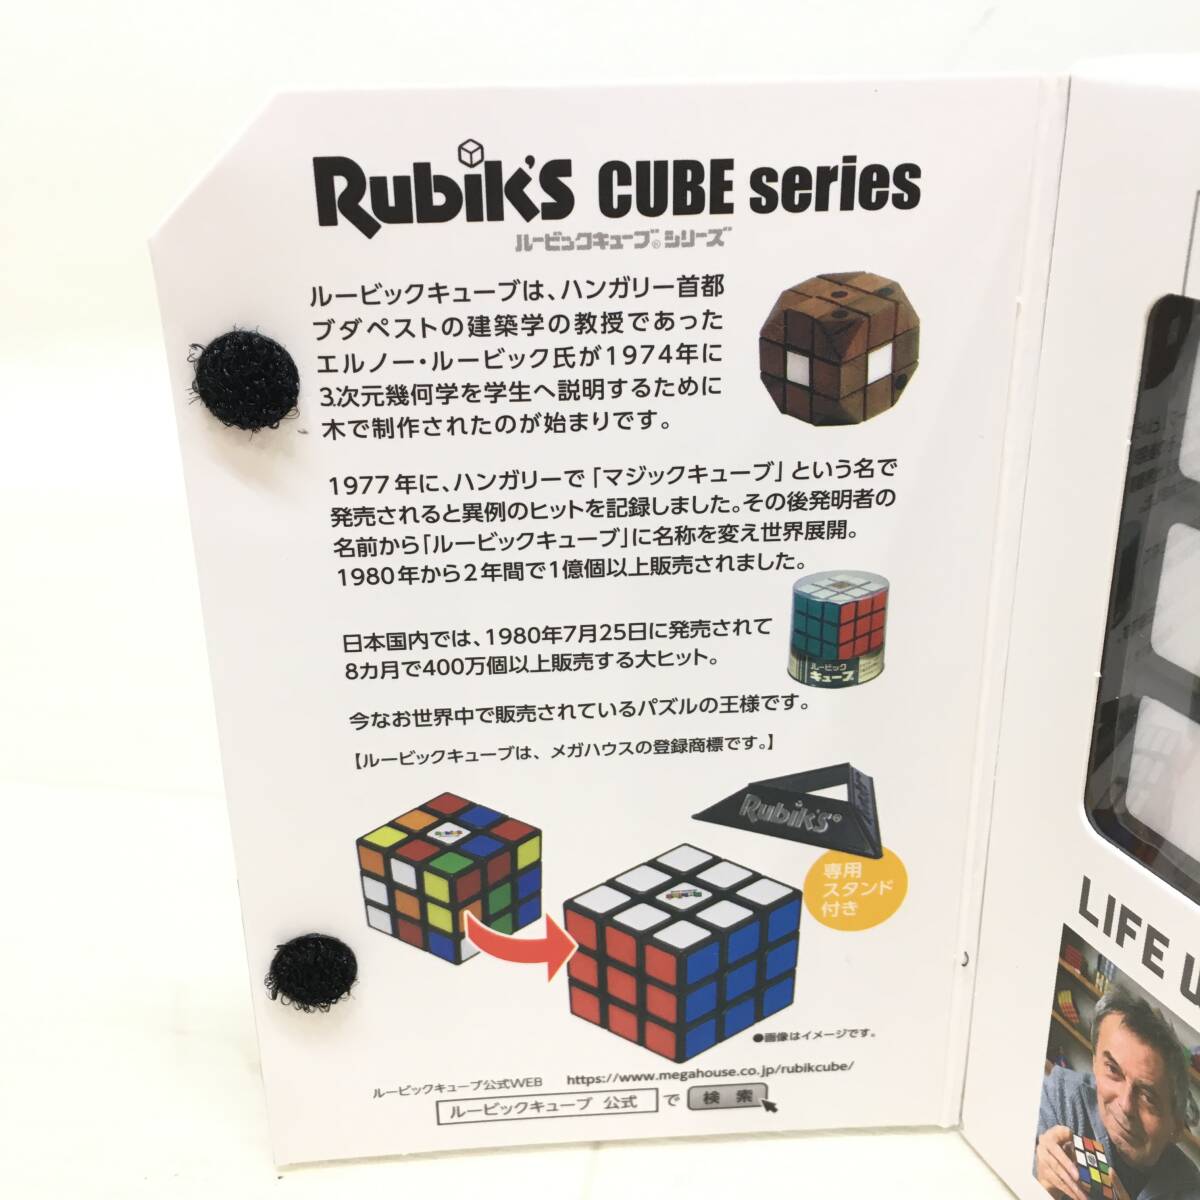 Σ unopened BANDAI NAMCO Bandai Rubiks CUBE Rubik's Cube ver.3.0 solid puzzle toy intellectual training toy colorful present condition goods ΣK52482